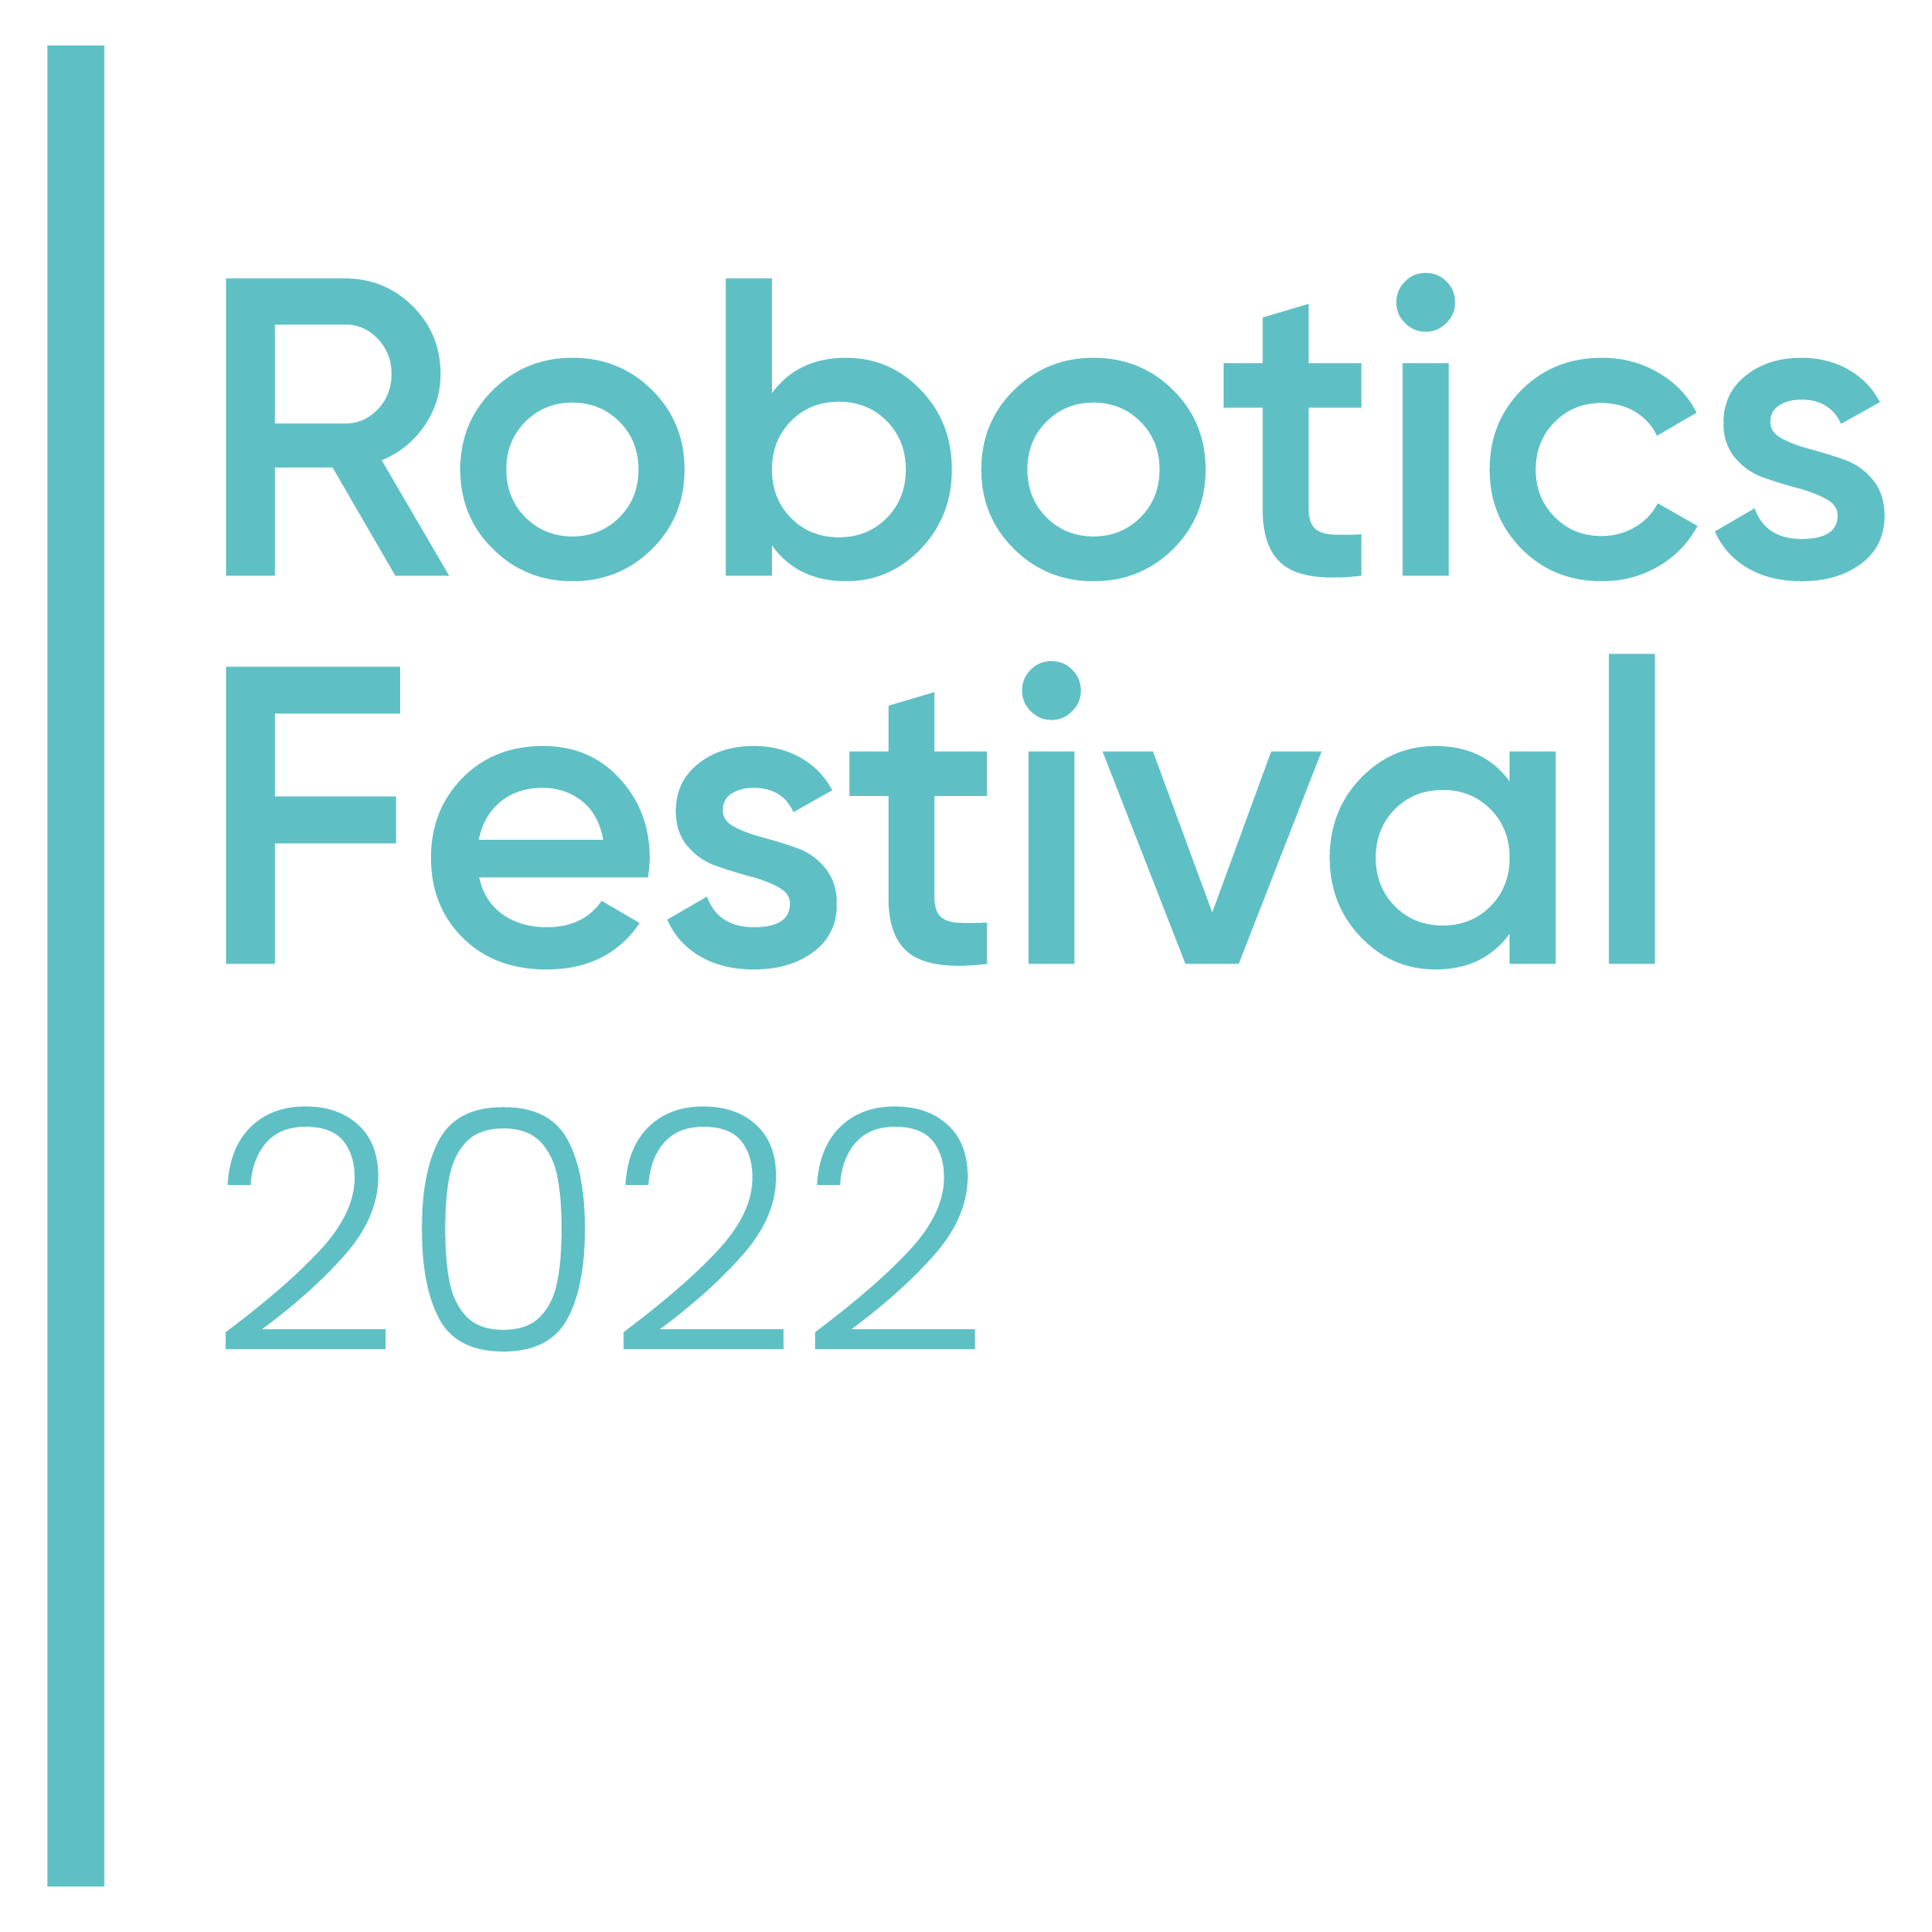 Robotics Festival 2022